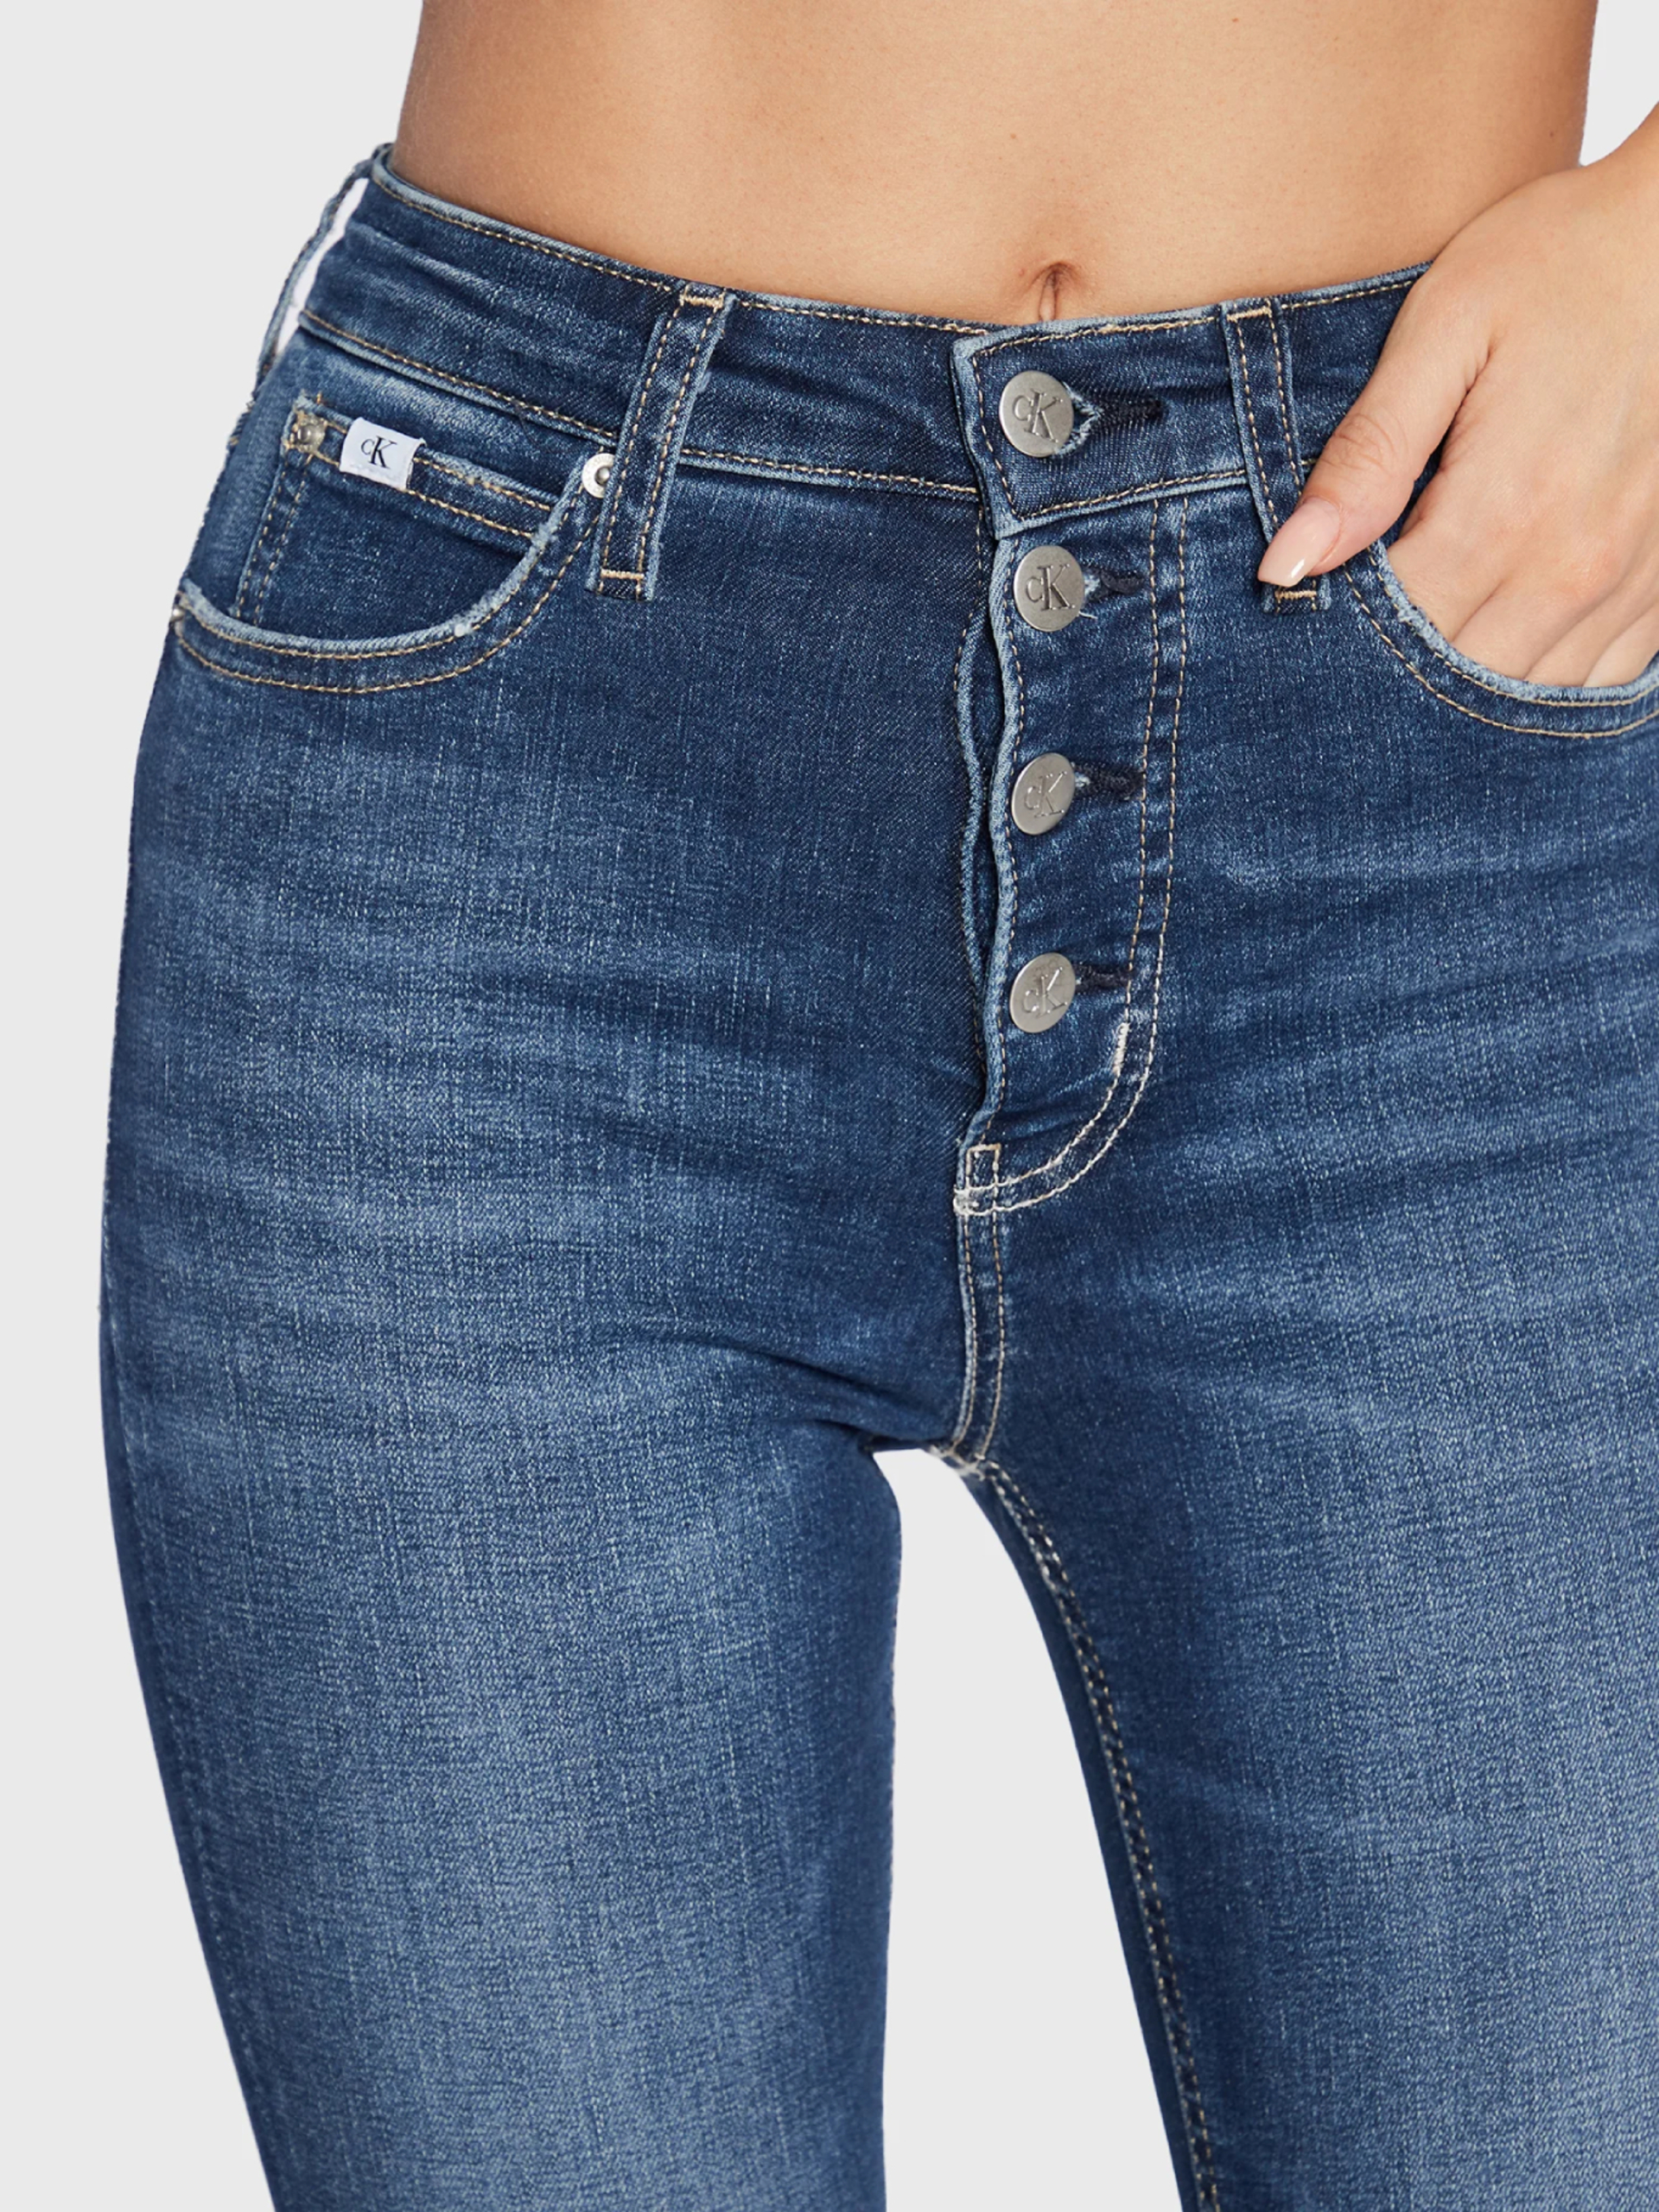 Calvin Klein dámské modré džíny - 25/NI (1BJ)